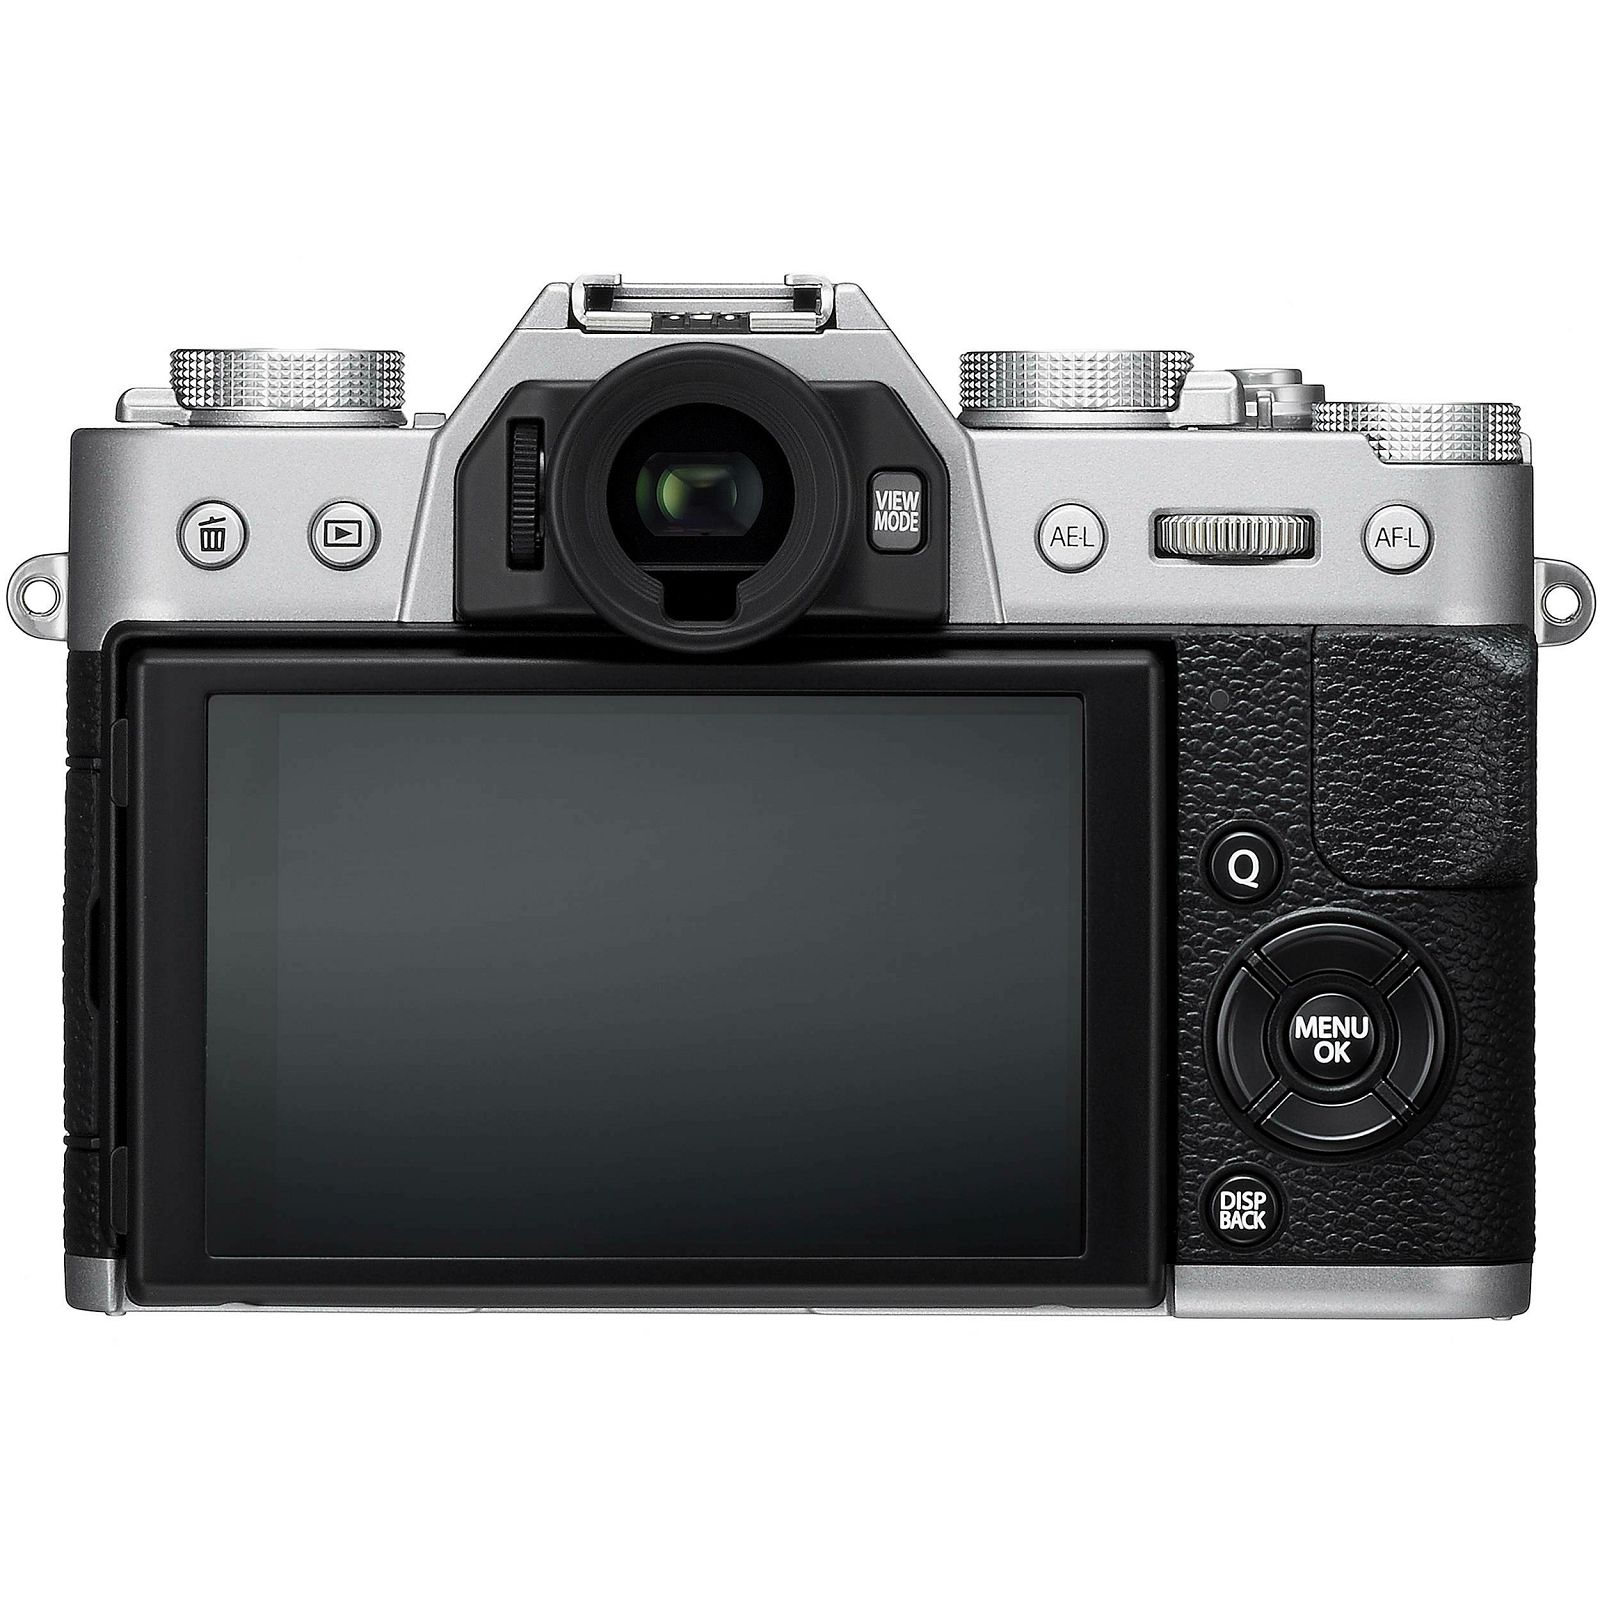 Fujifilm X-T20 + XC 16-50 f3.5-5.6 OIS II Silver srebreni digitalni mirrorless fotoaparat s objektivom 16-50mm Fuji